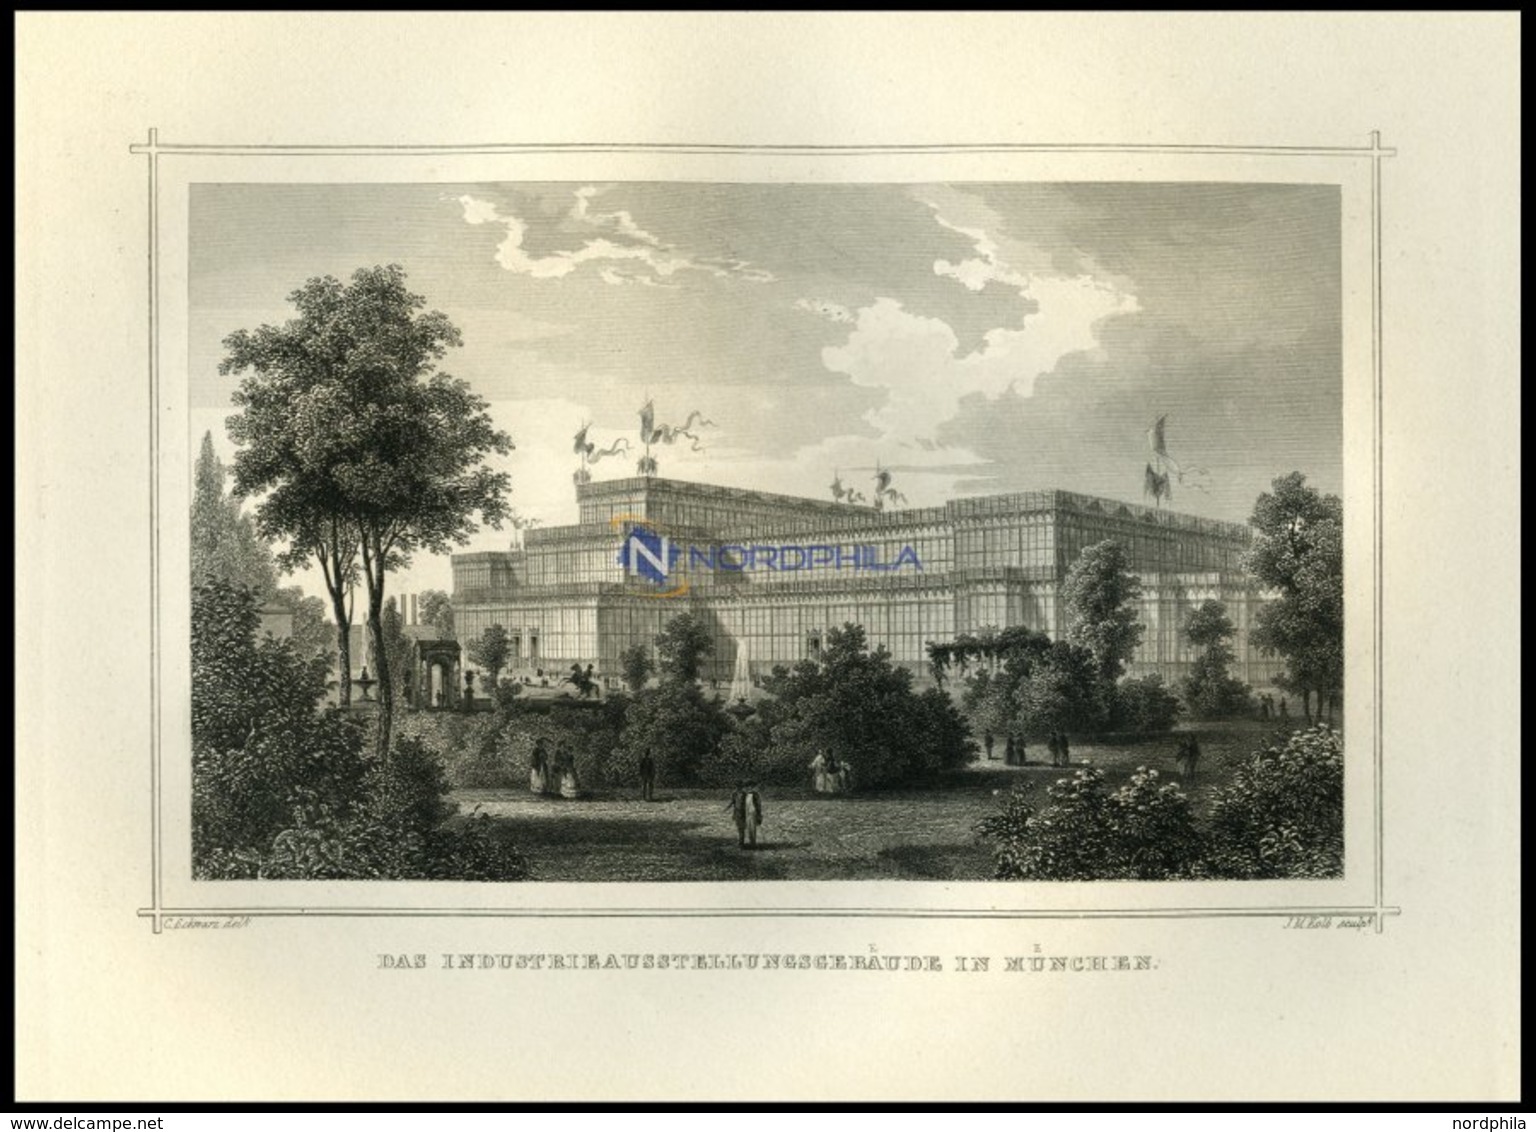 MÜNCHEN: Das Industrieausstellungsgebäude, Stahlstich Von Schwarz/Kolb Um 1850 - Lithographien